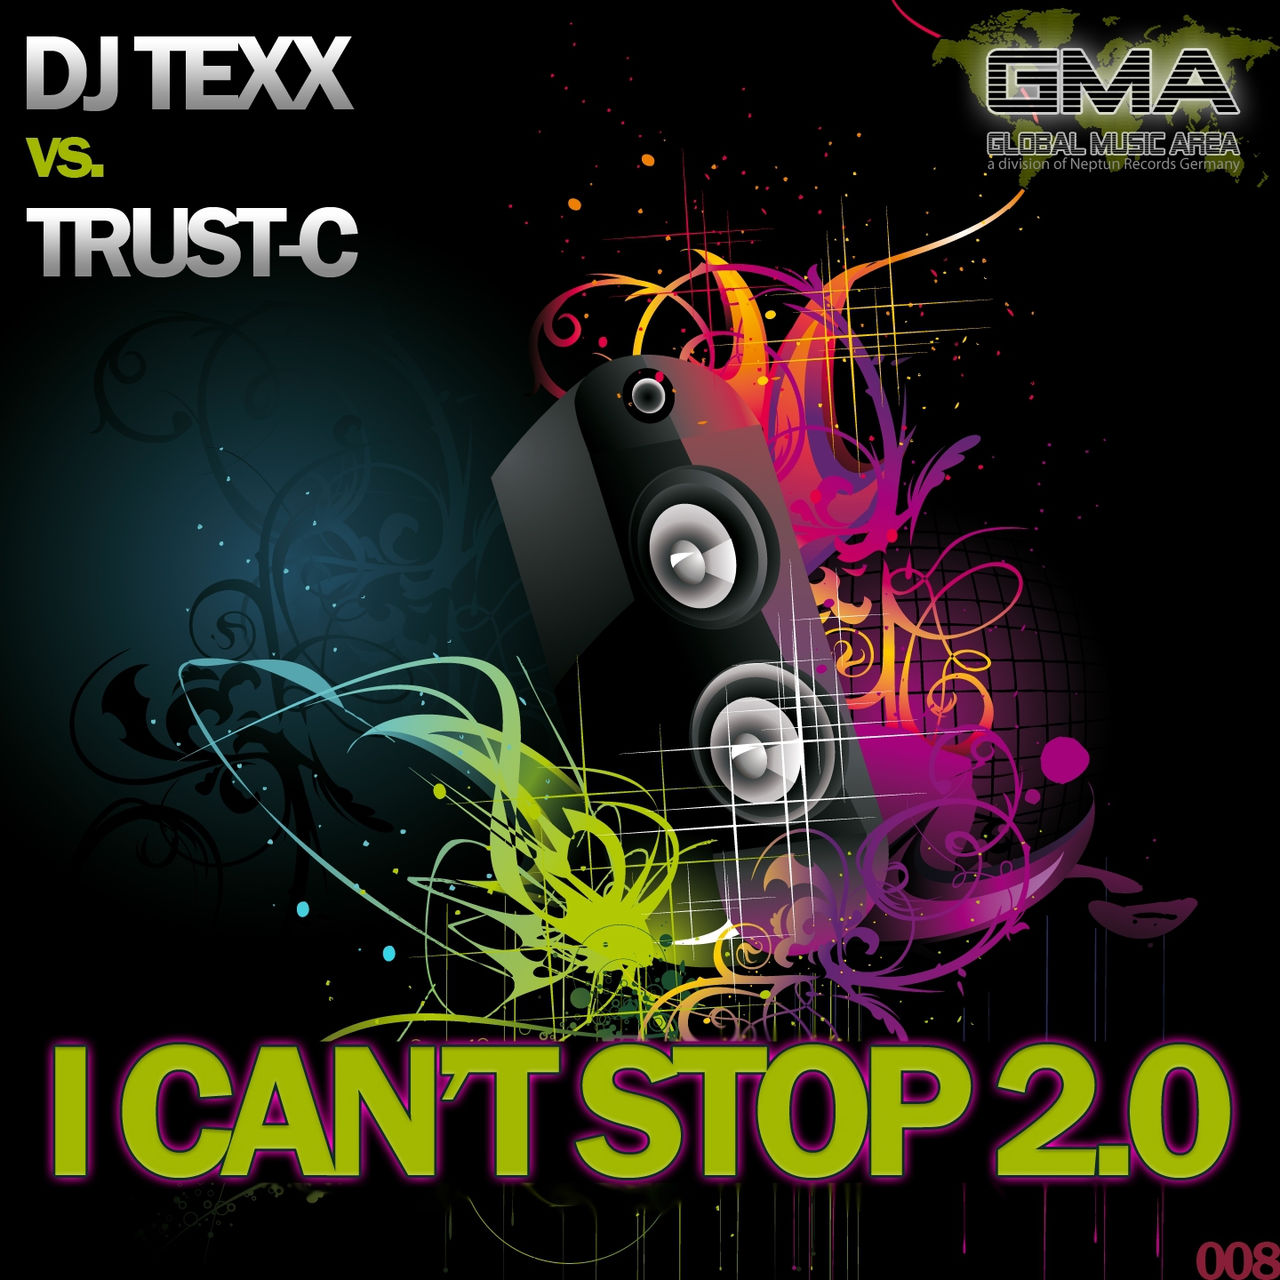 DJ Texx - I Can't Stop (Club Mix) фото